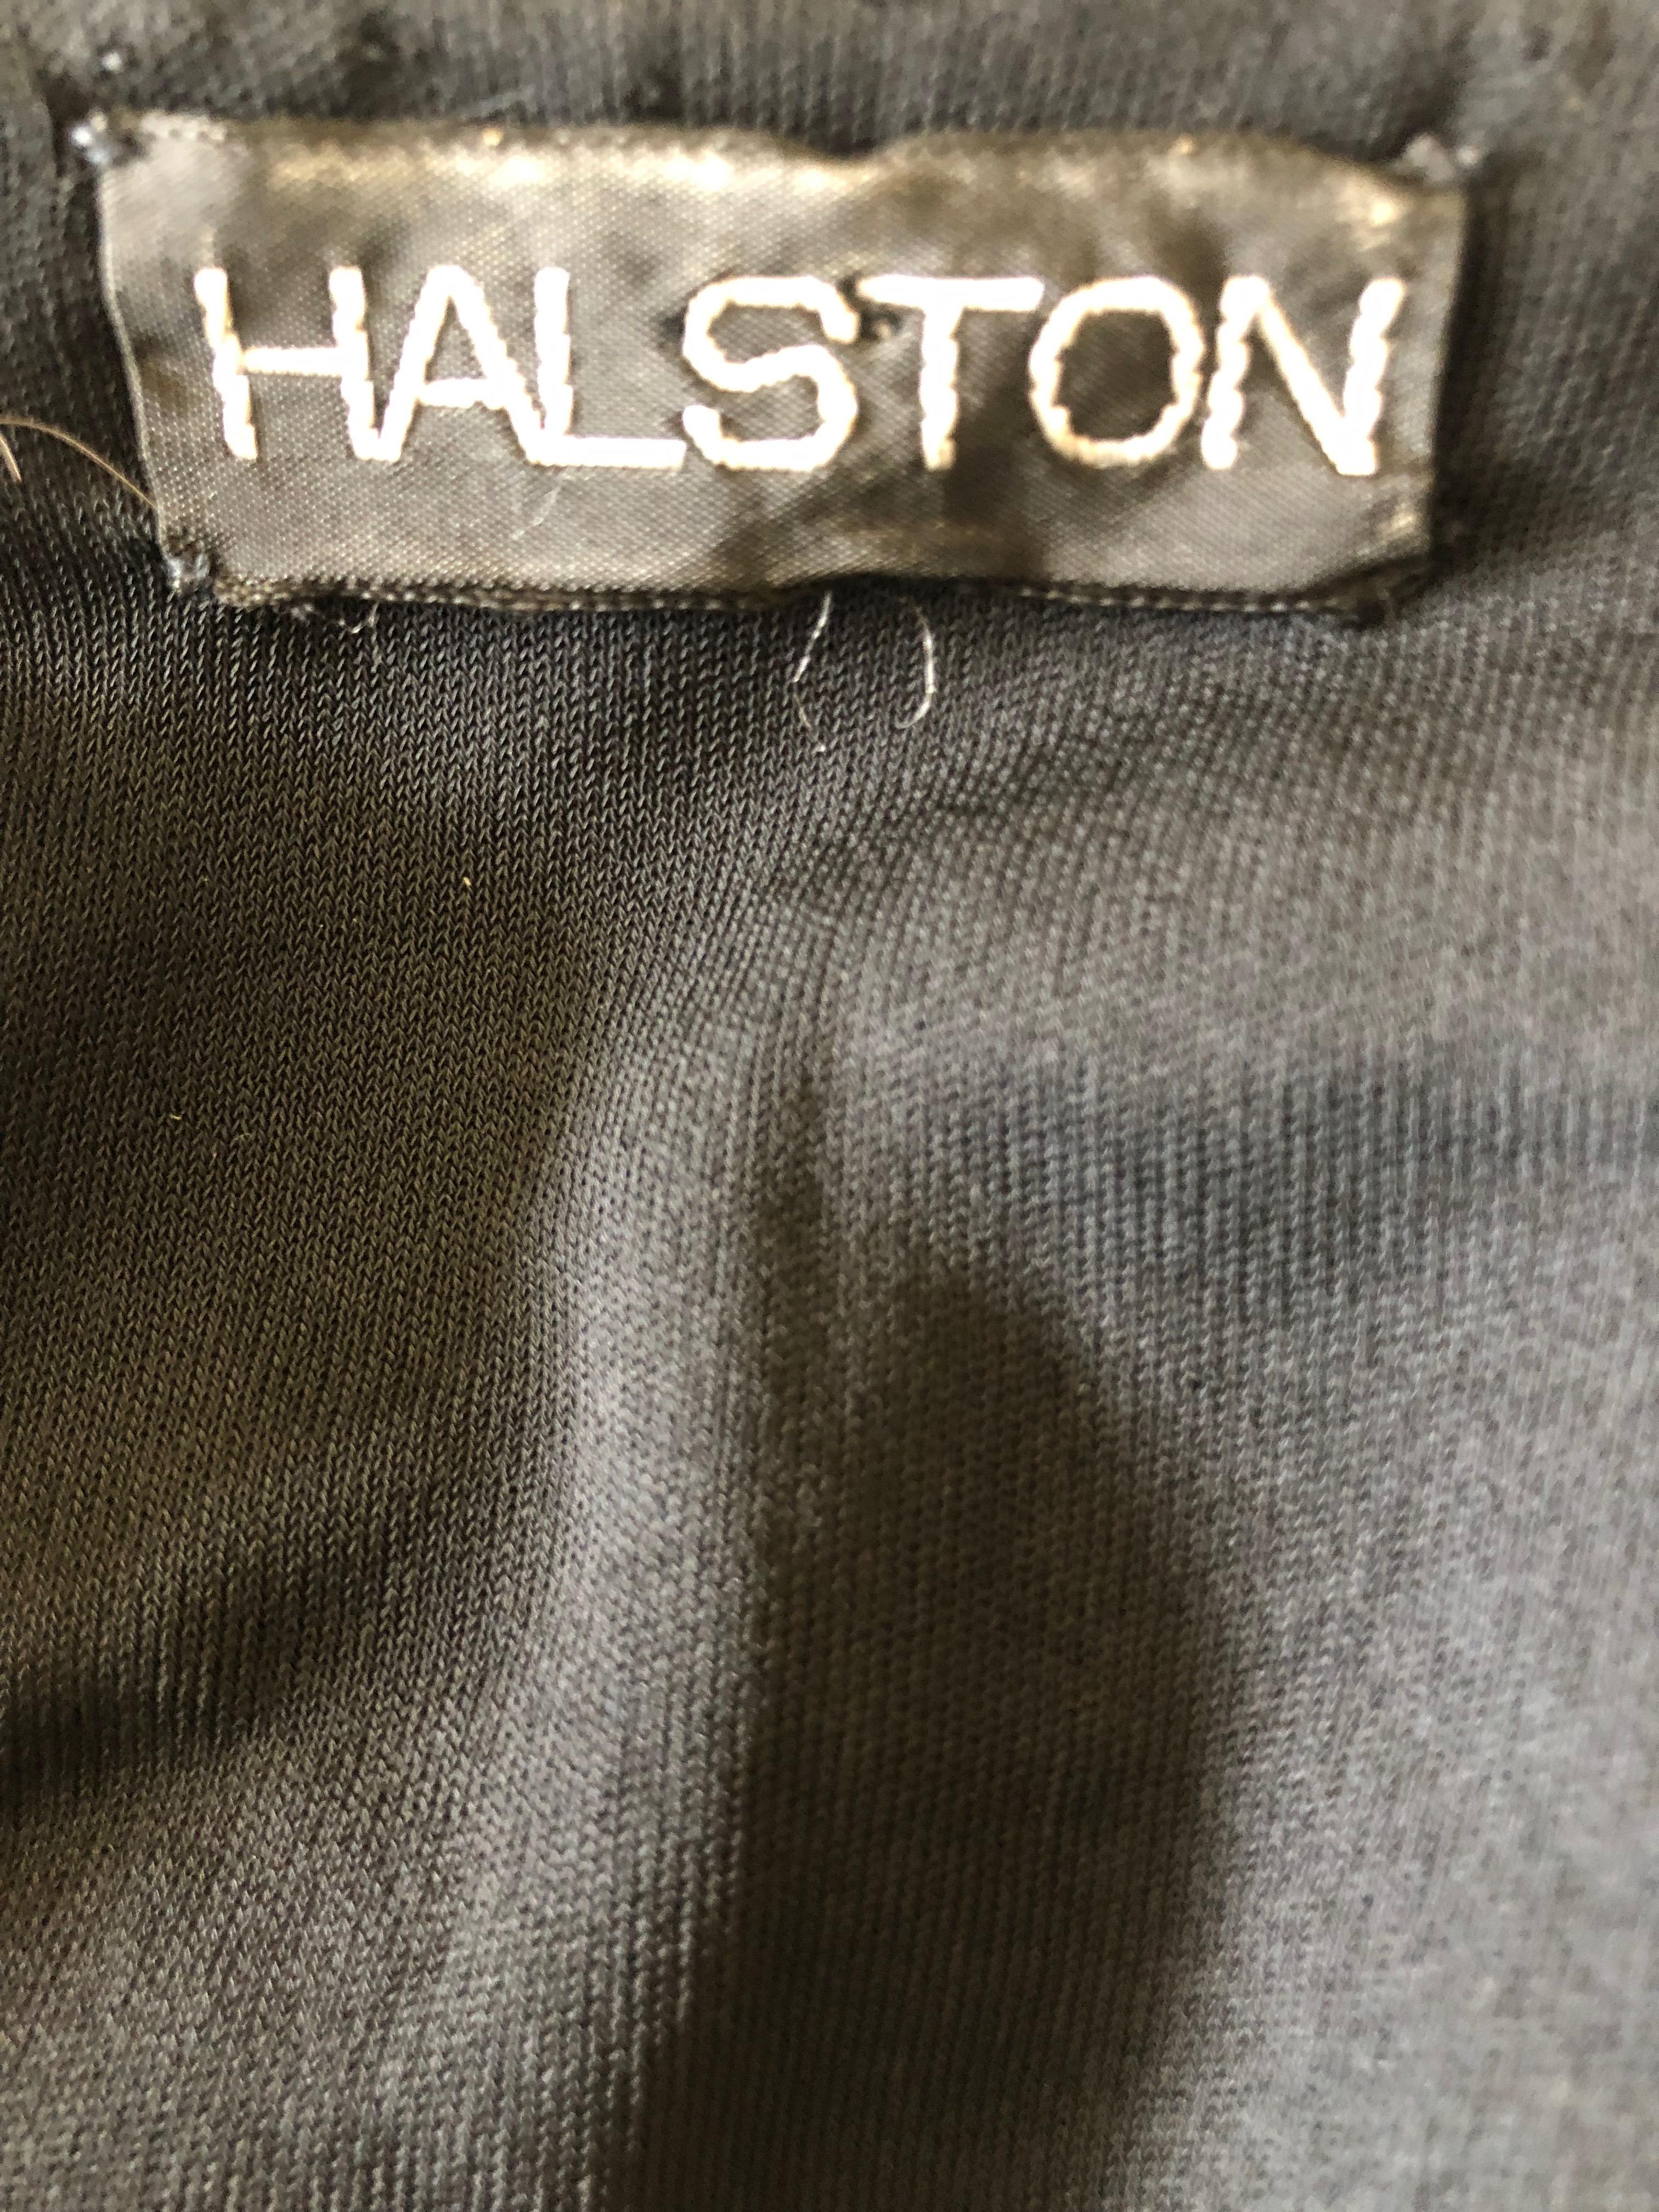 Halston 1970's Disco Era Low Cut Sequin Little Black Wrap Style Dress 7